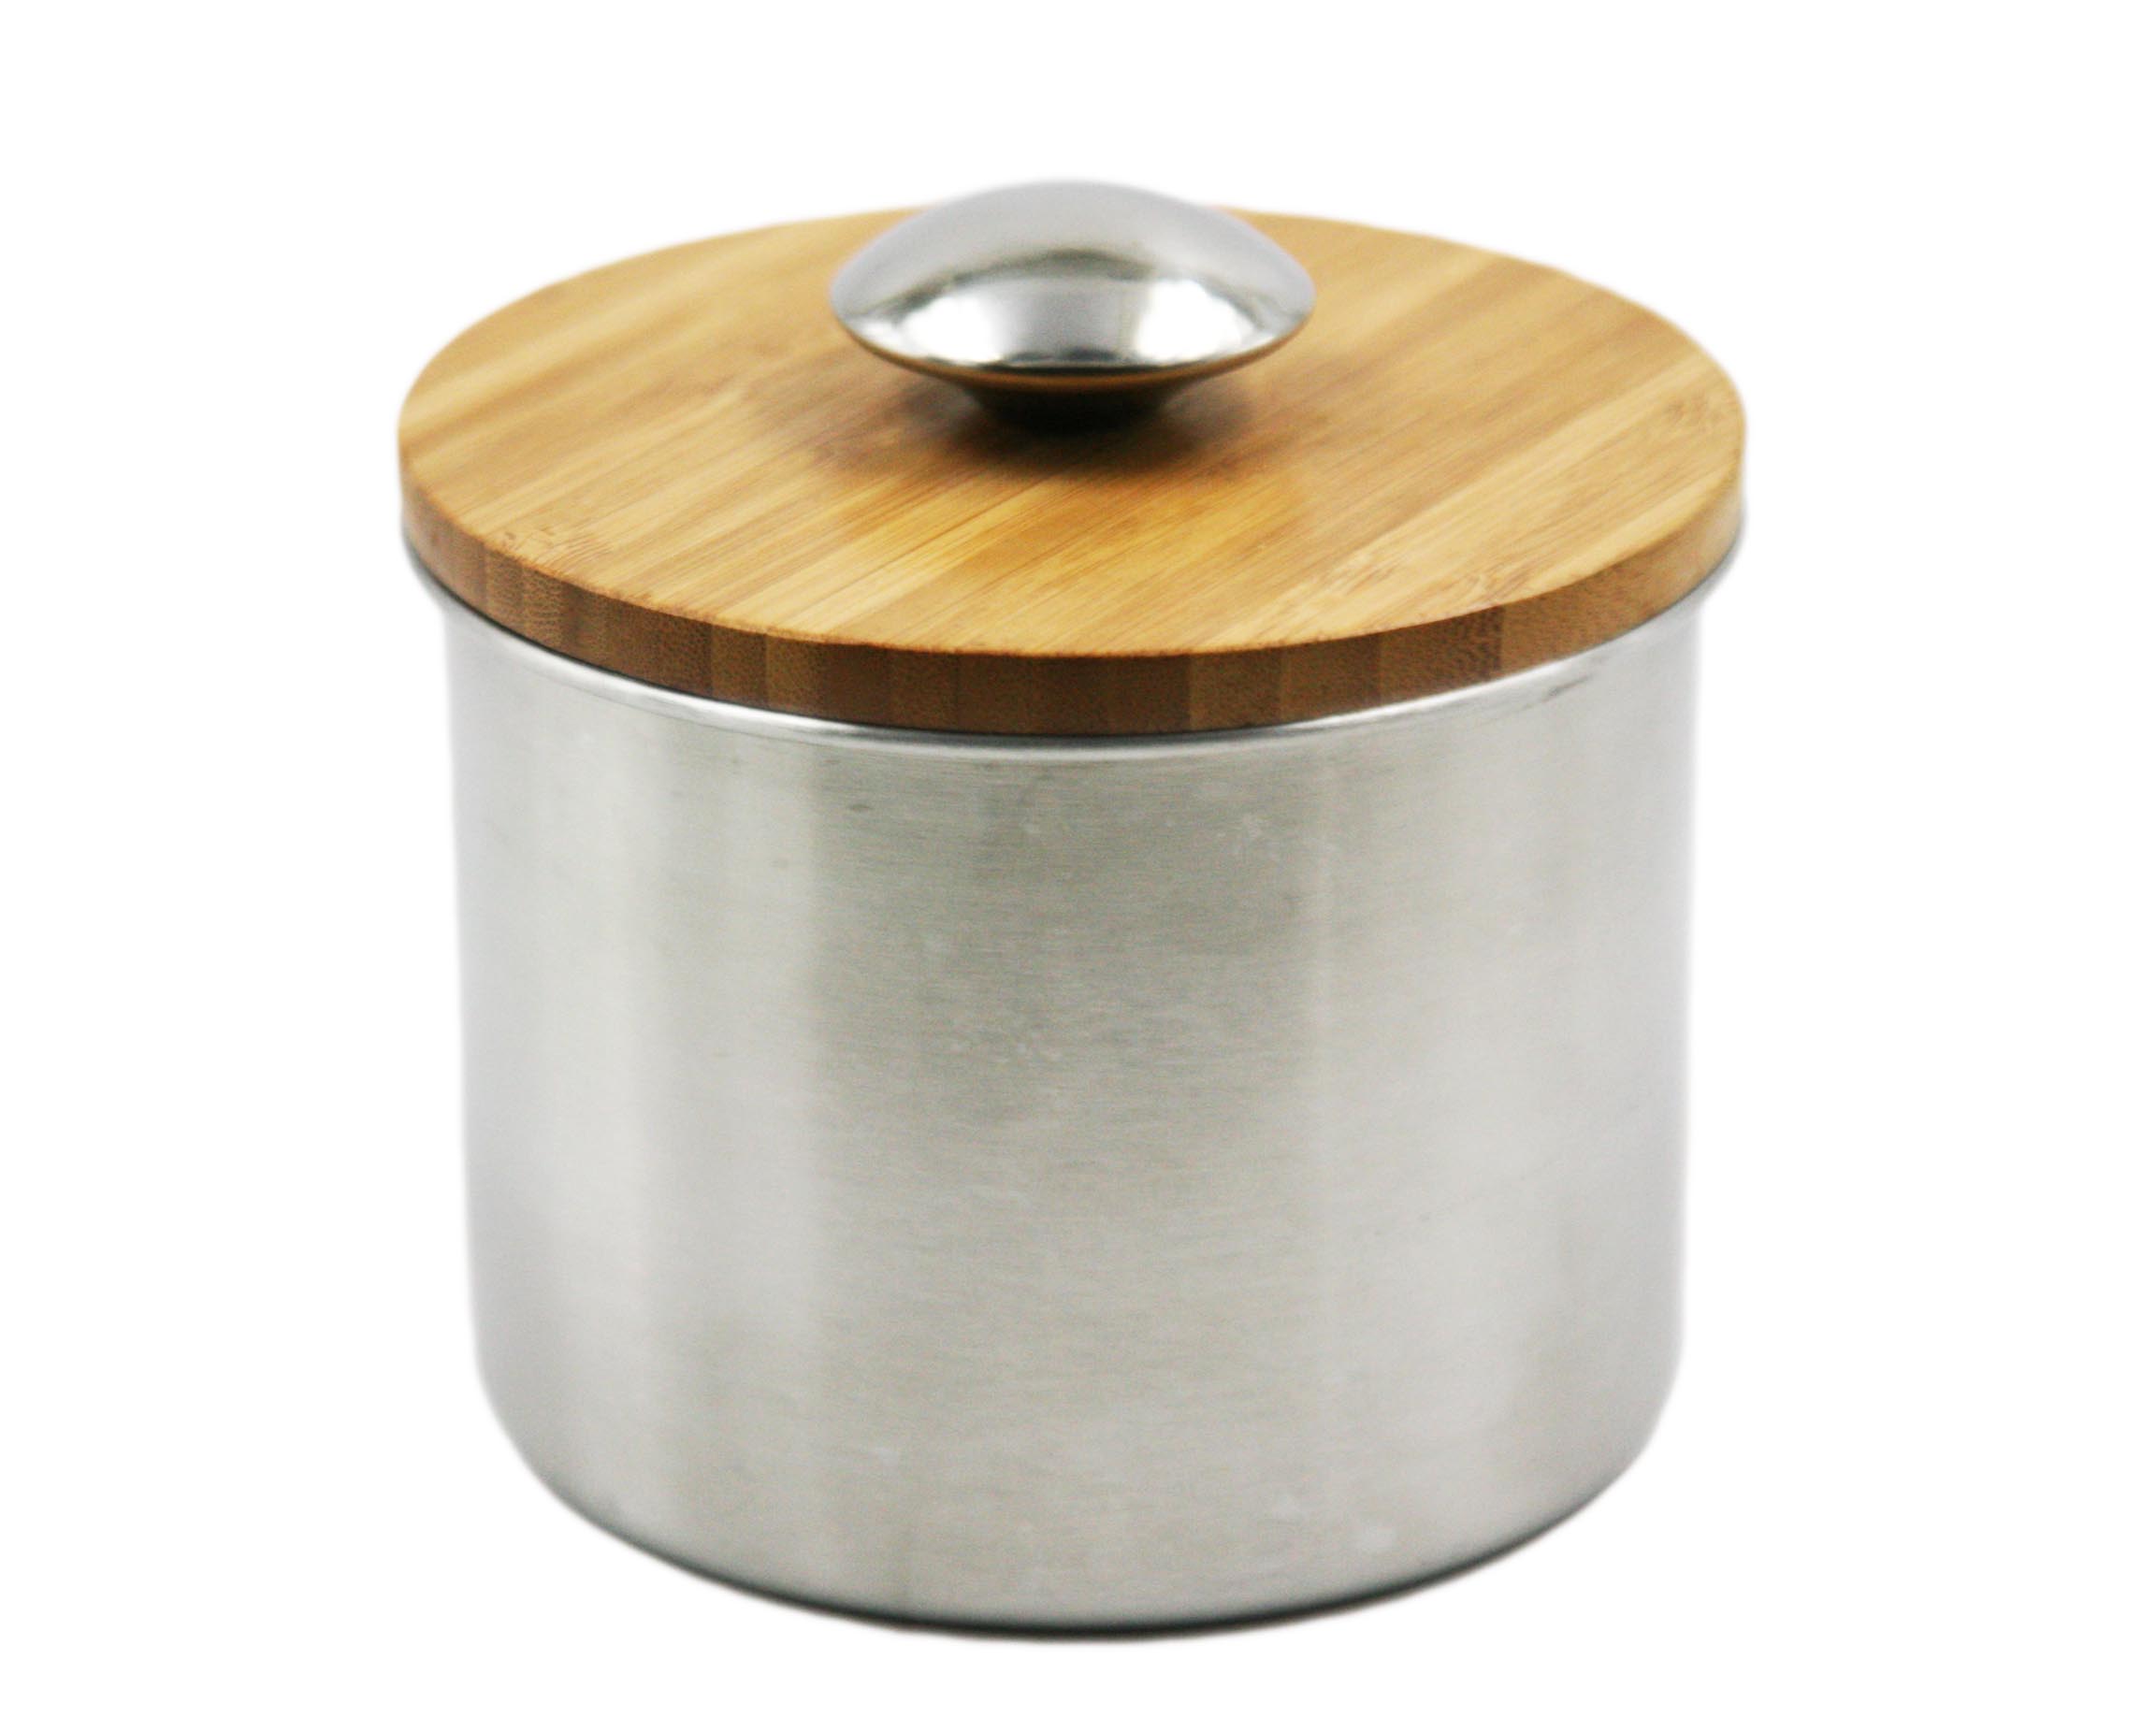 High-end acciaio inox bagagli Pot / Can / vaso con coperchio in legno EB-MF022